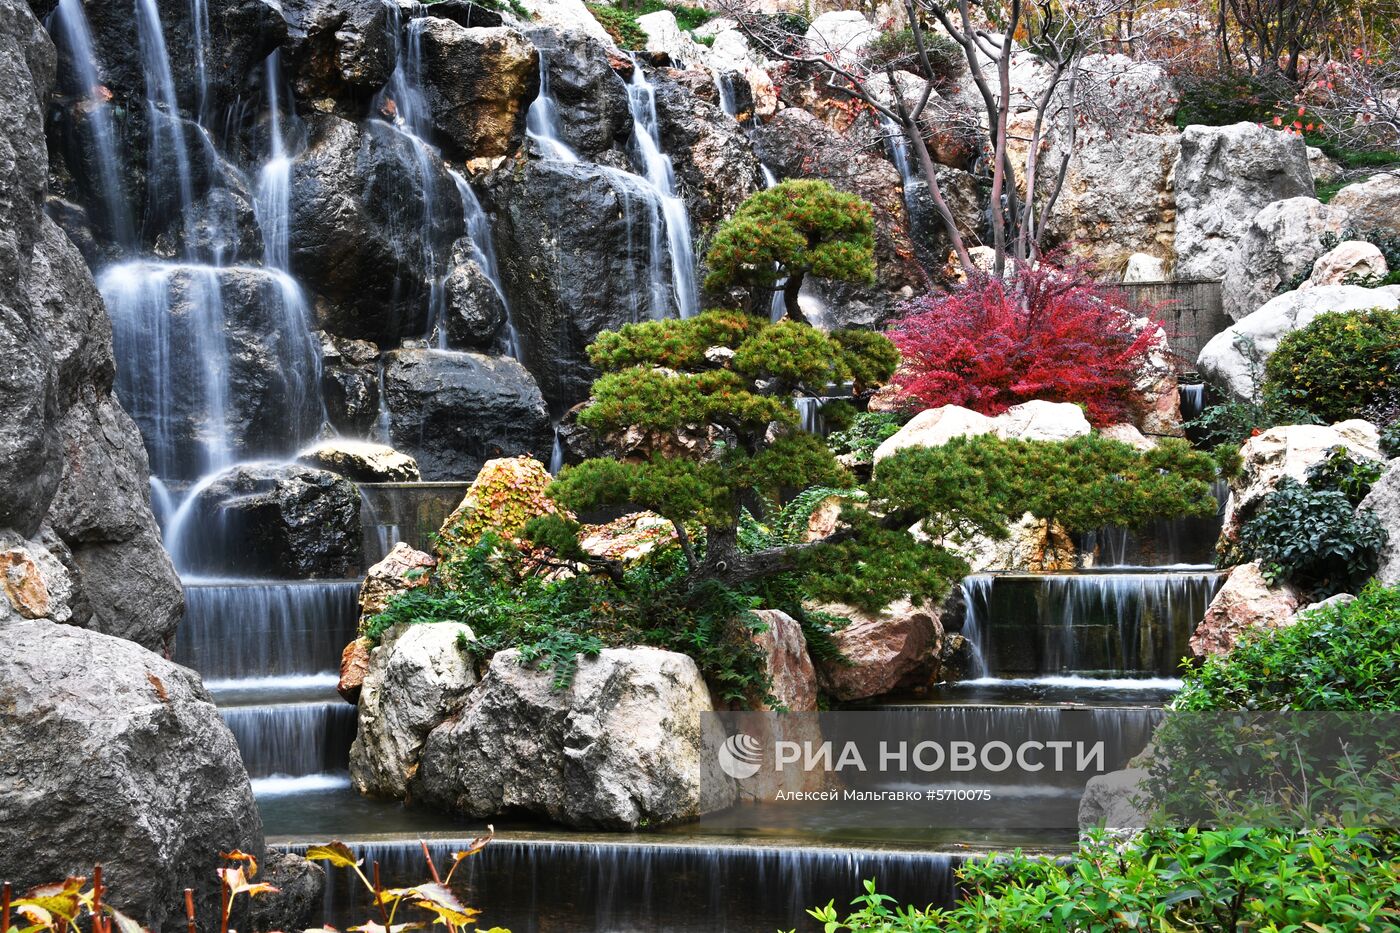 Открытие японского сада в Крыму